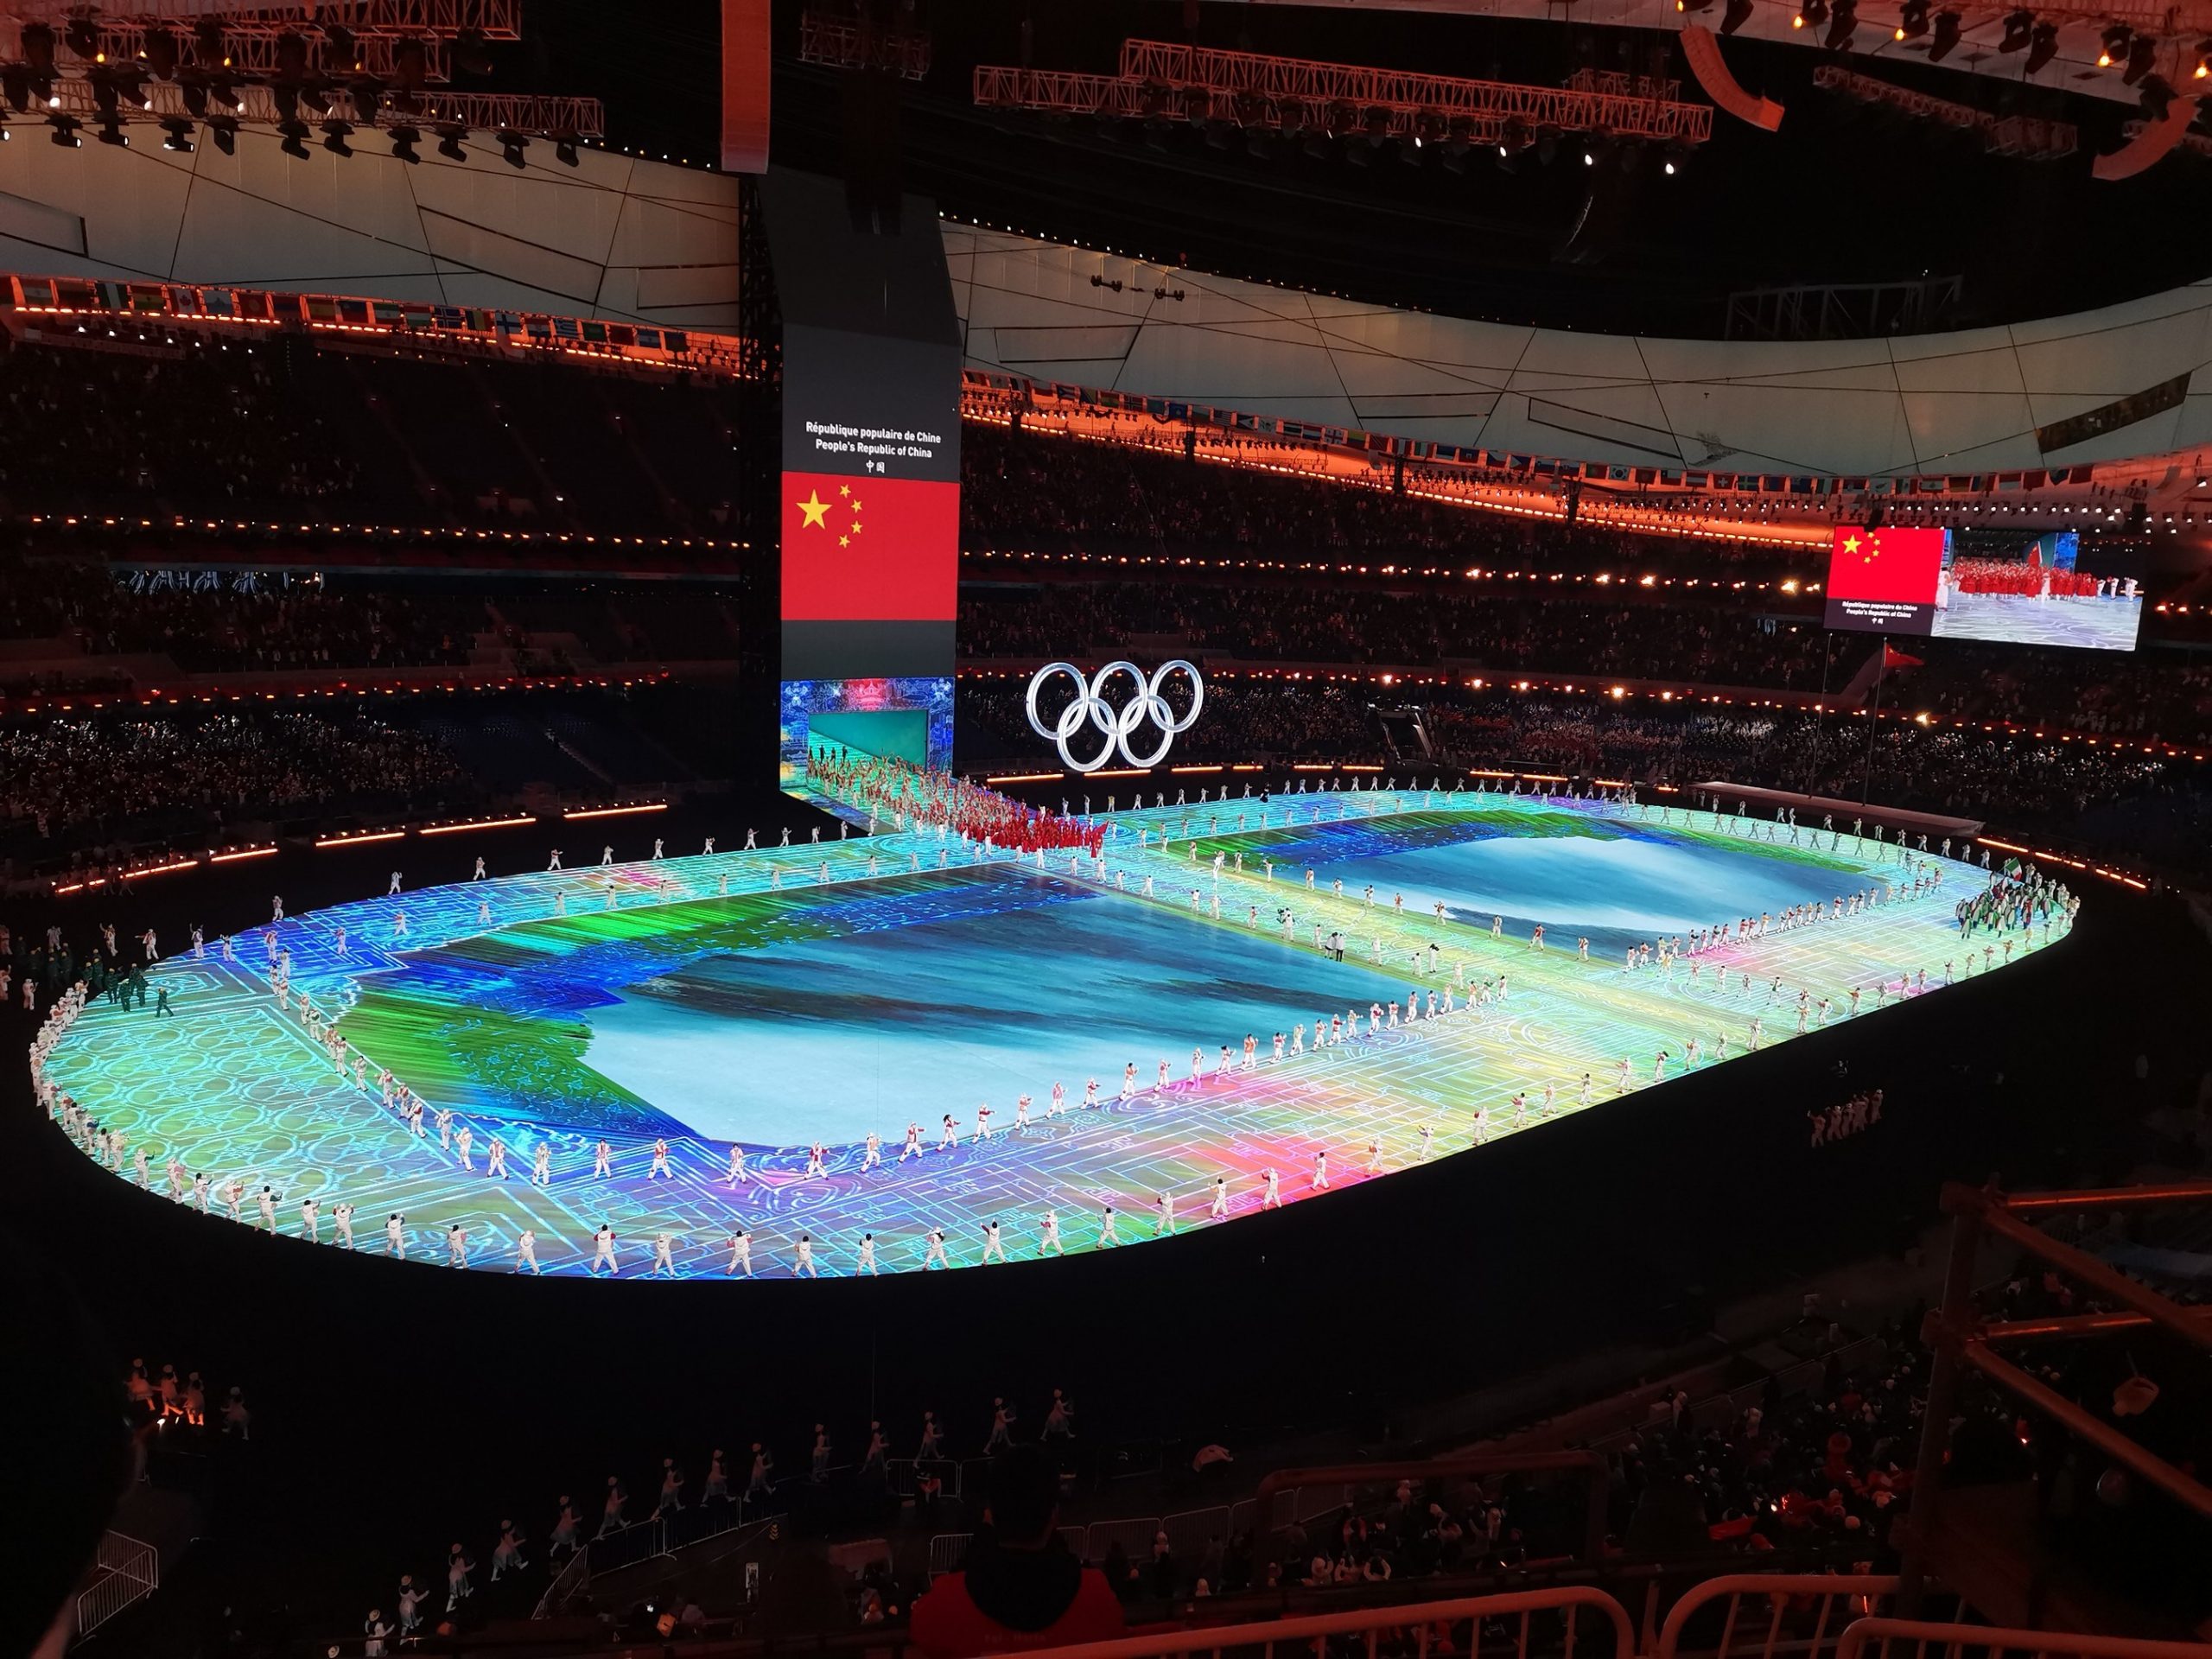 ยูนิลูมิน ส่งเสริมพิธีการเปิดการแข่งขันกีฬาโอลิมปิกฤดูหนาวกรุงปักกิ่ง 2022